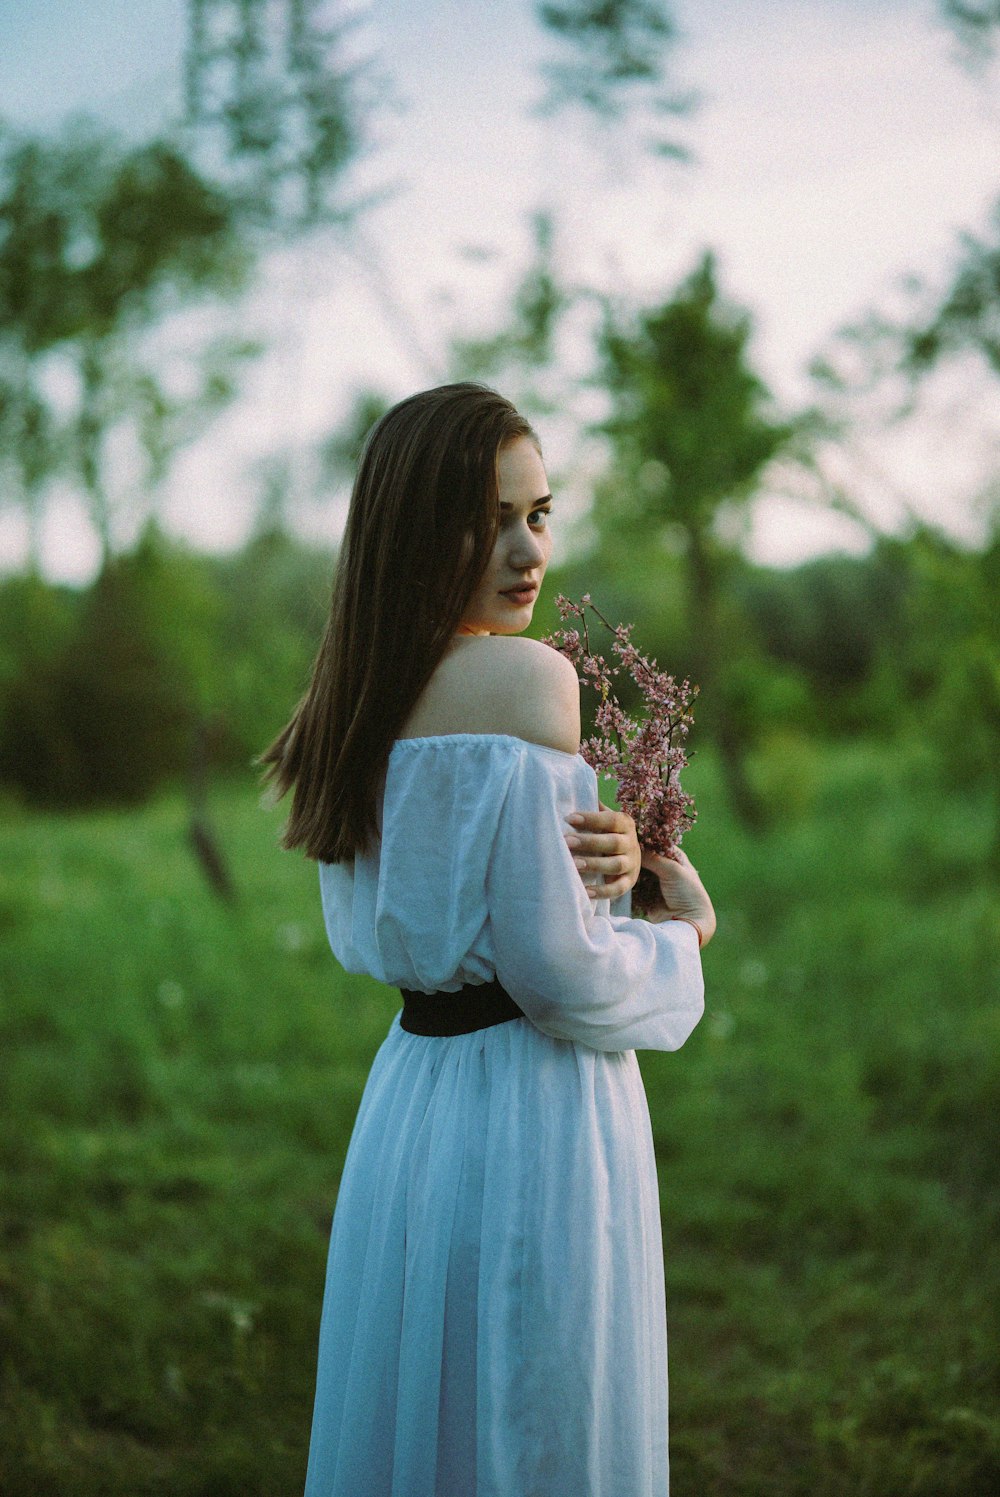 Una mujer con un vestido blanco sosteniendo una flor